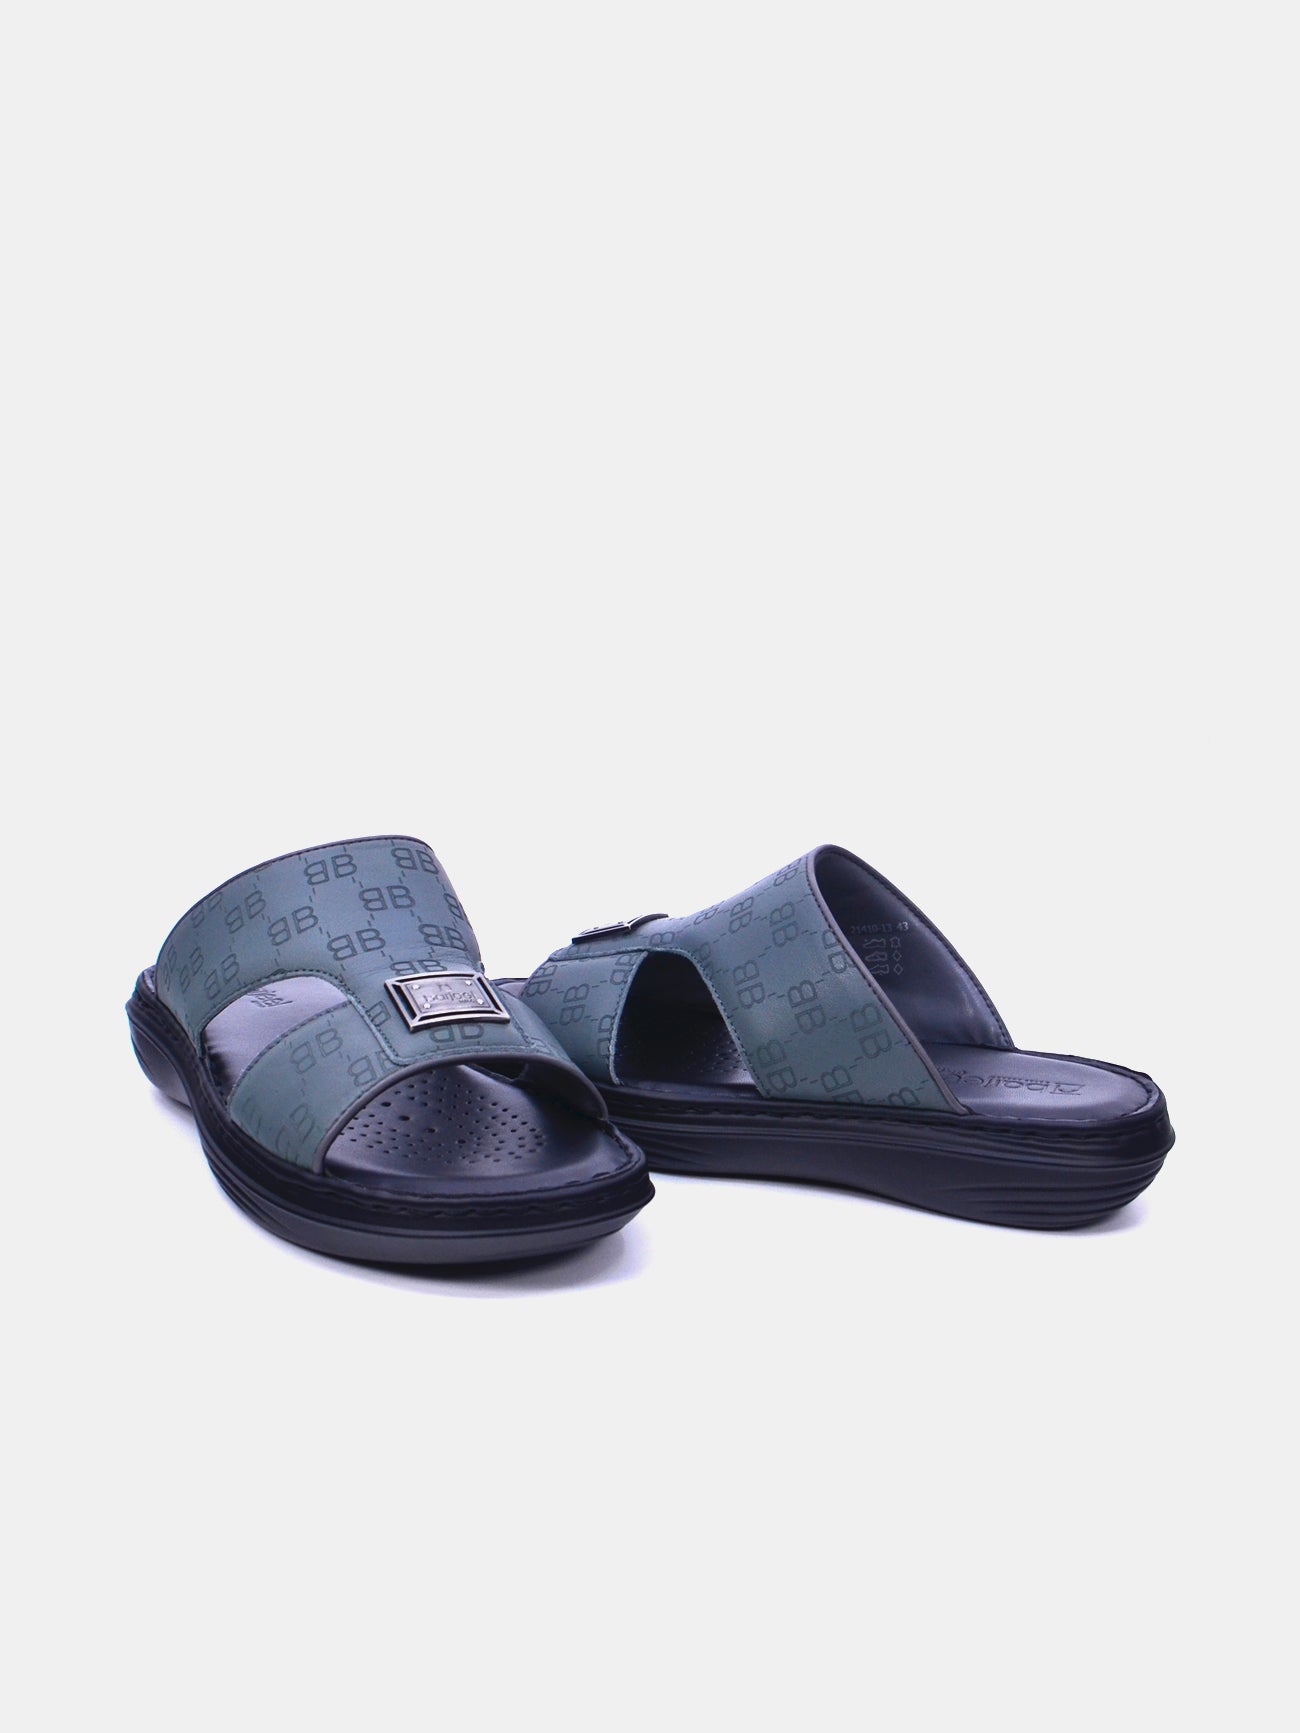 Barjeel Uno 21410-13 Men's Arabic Sandals #color_Grey